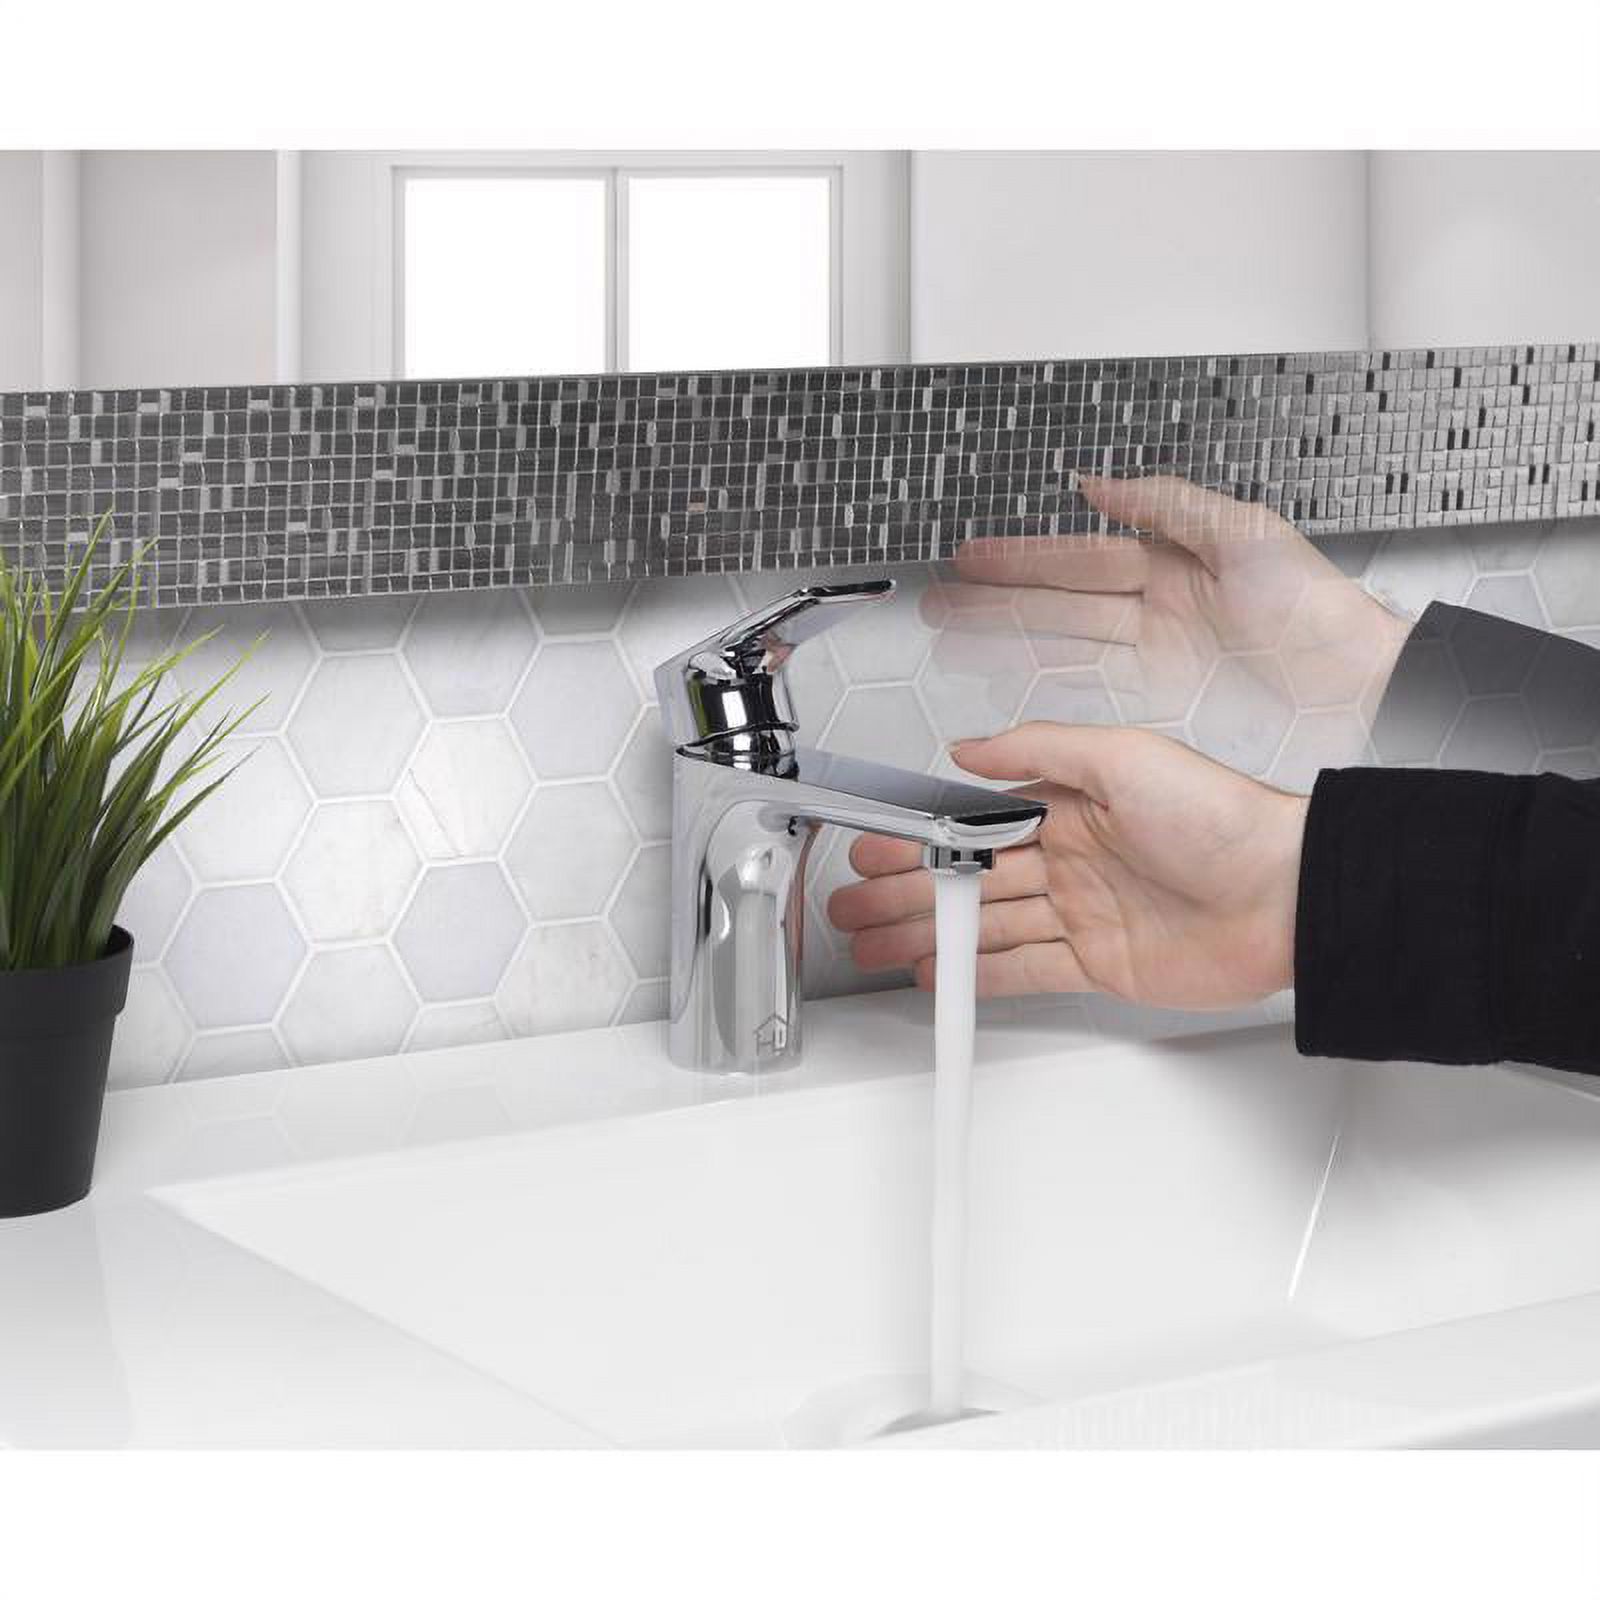 Homewerks Worldwide 4000626 2 in. Motion Sensing Single-Handle Bathroom Sink Faucet, Chrome - image 5 of 10